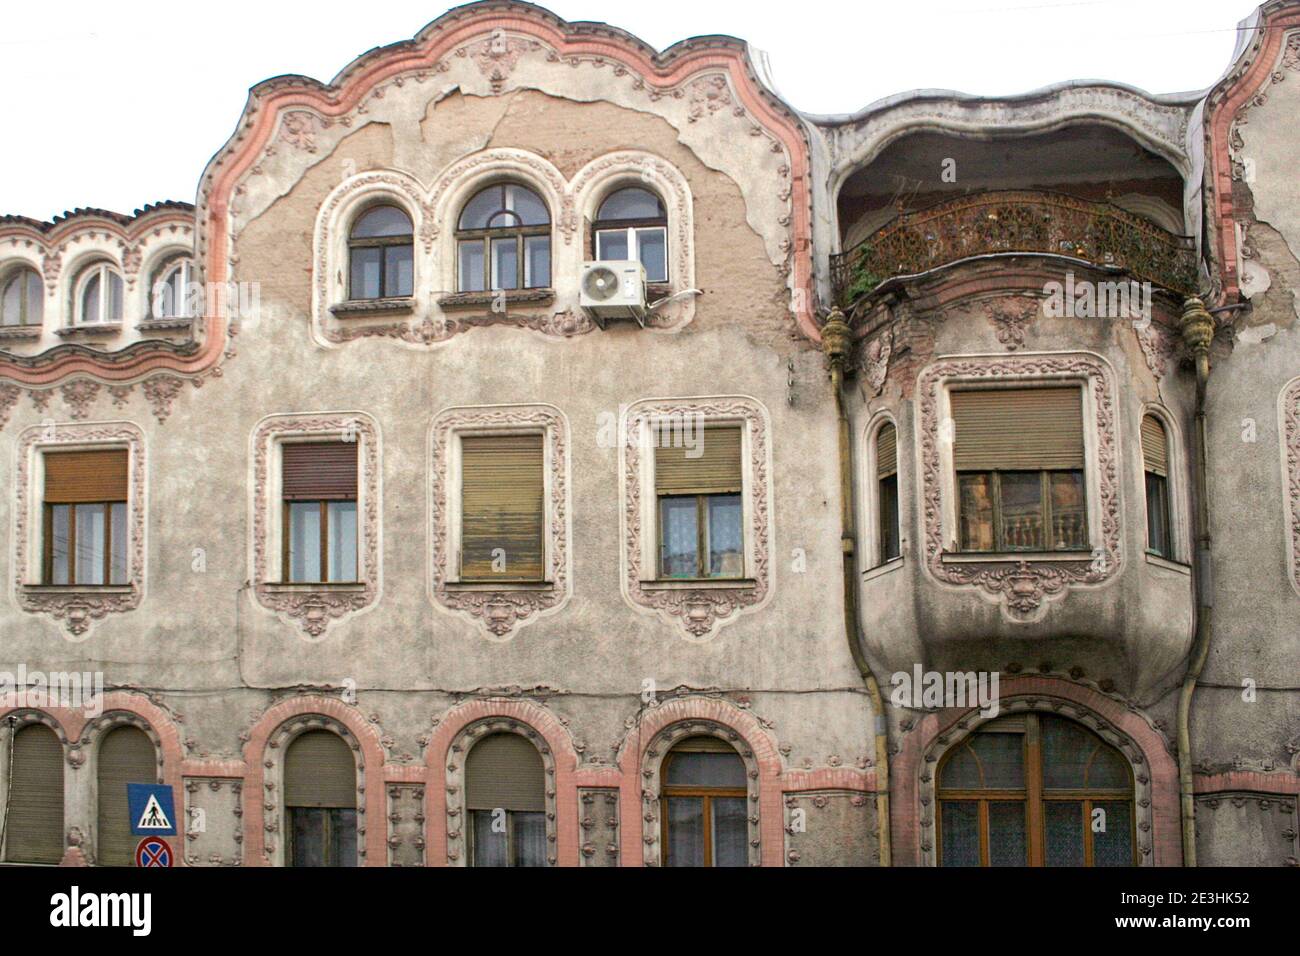 Détails architecturaux sur un bâtiment du XIXe siècle à Oradea, Roumanie Banque D'Images